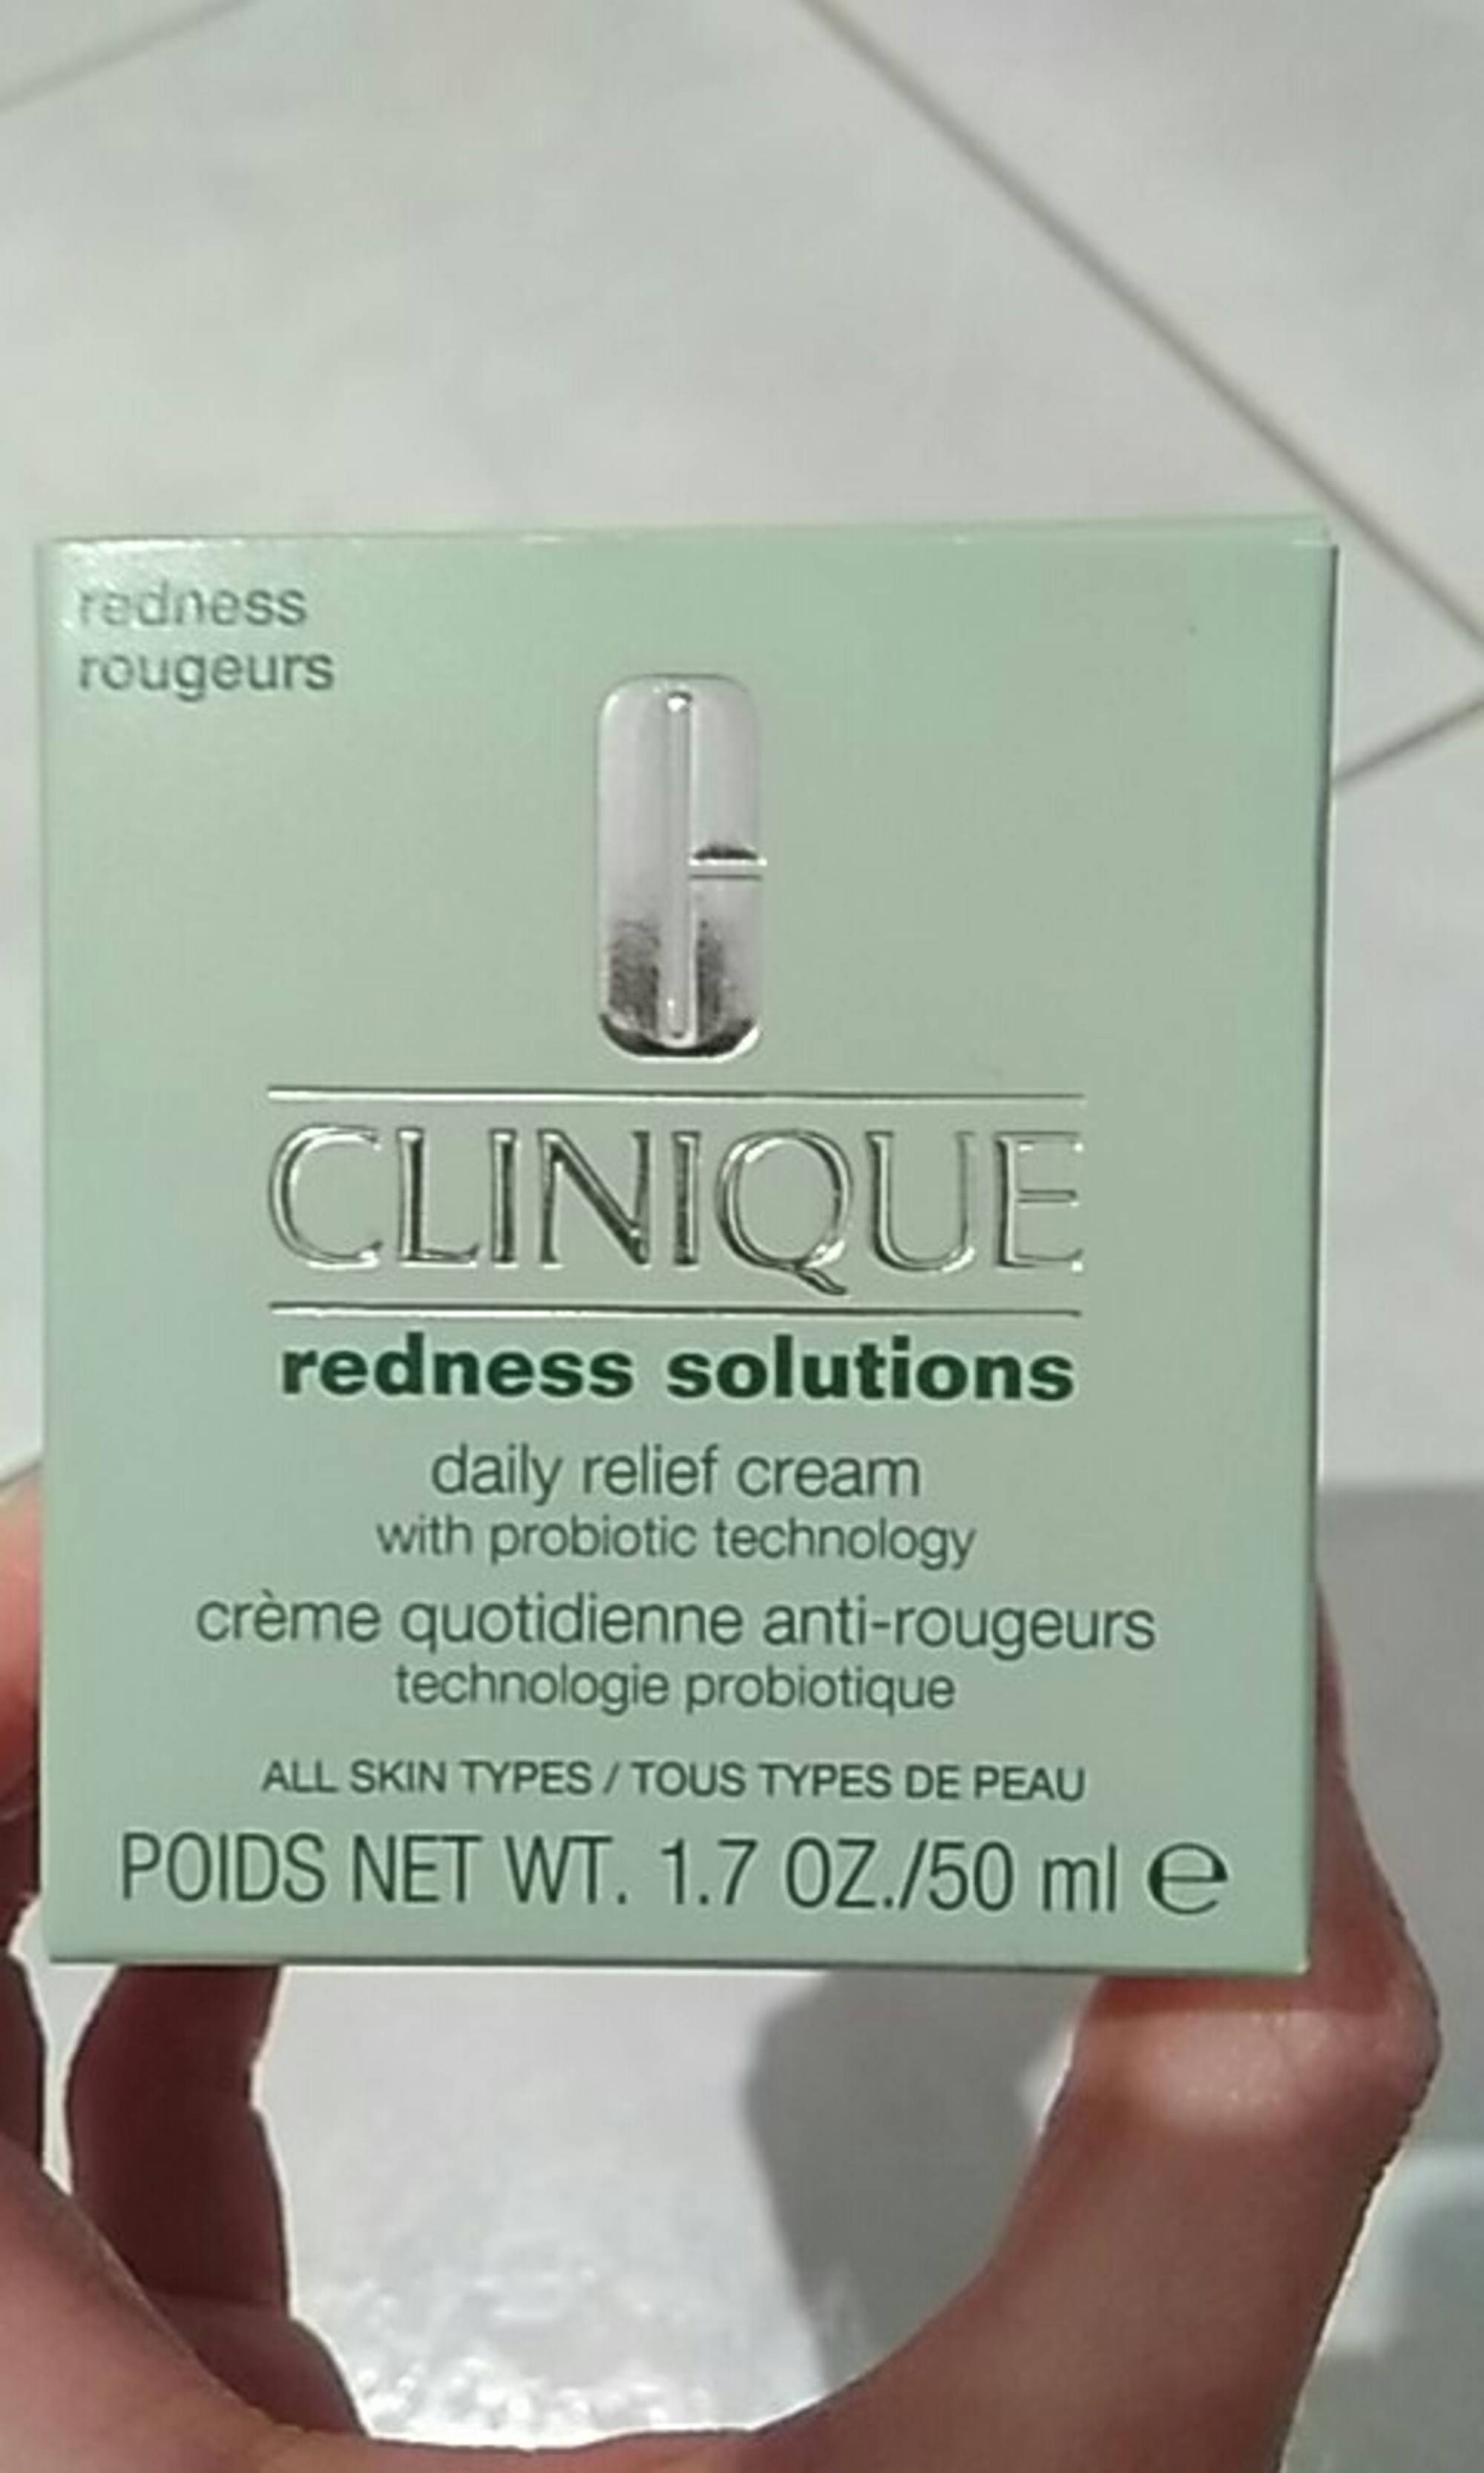 CLINIQUE - Redness solutions - Crème quotidienne anti-rougeurs